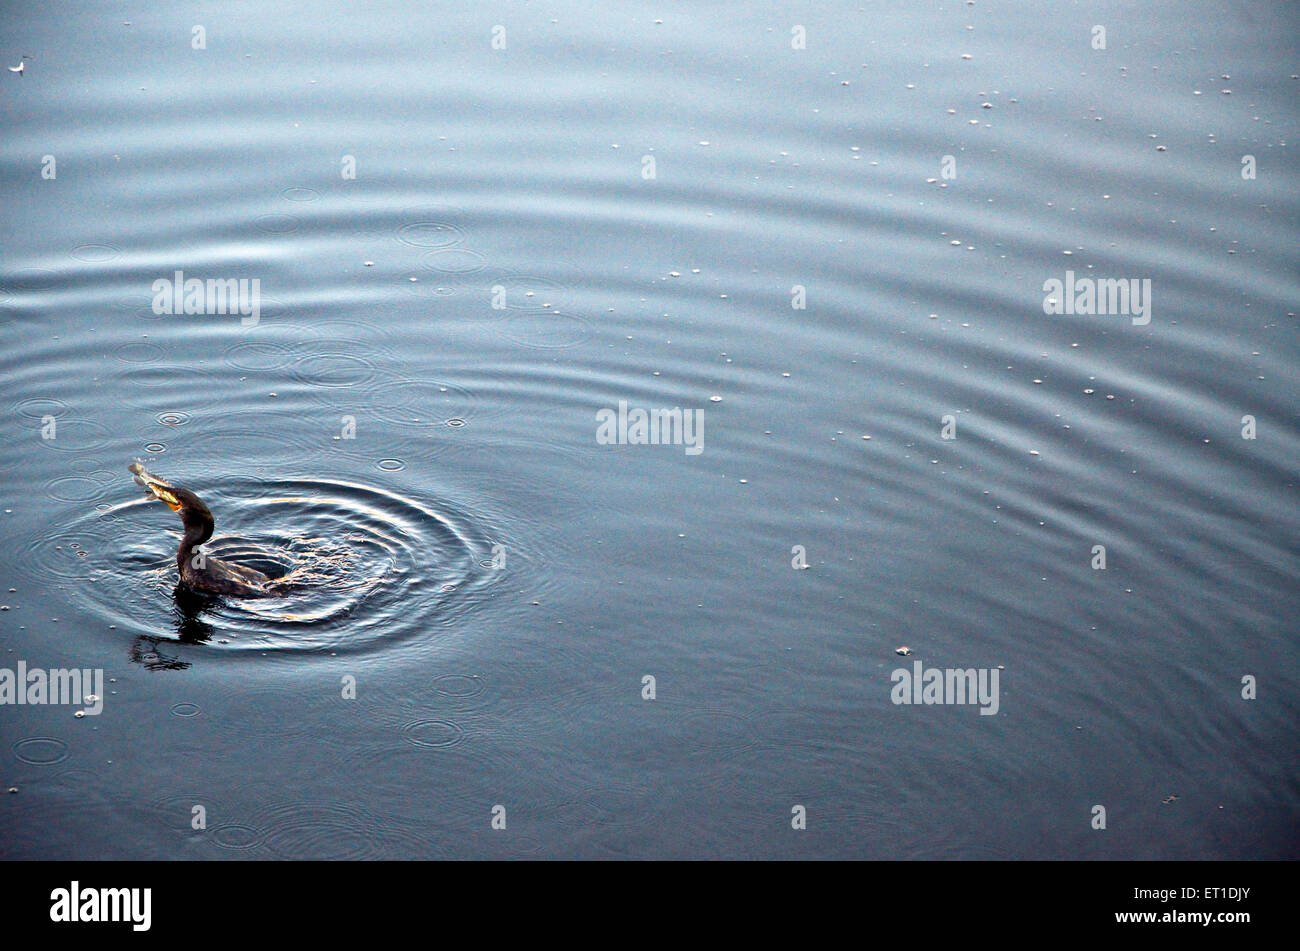 Kormoran mit Fisch im Schnabel in Teich Jodhpur Rajasthan Indien Asien Stockfoto